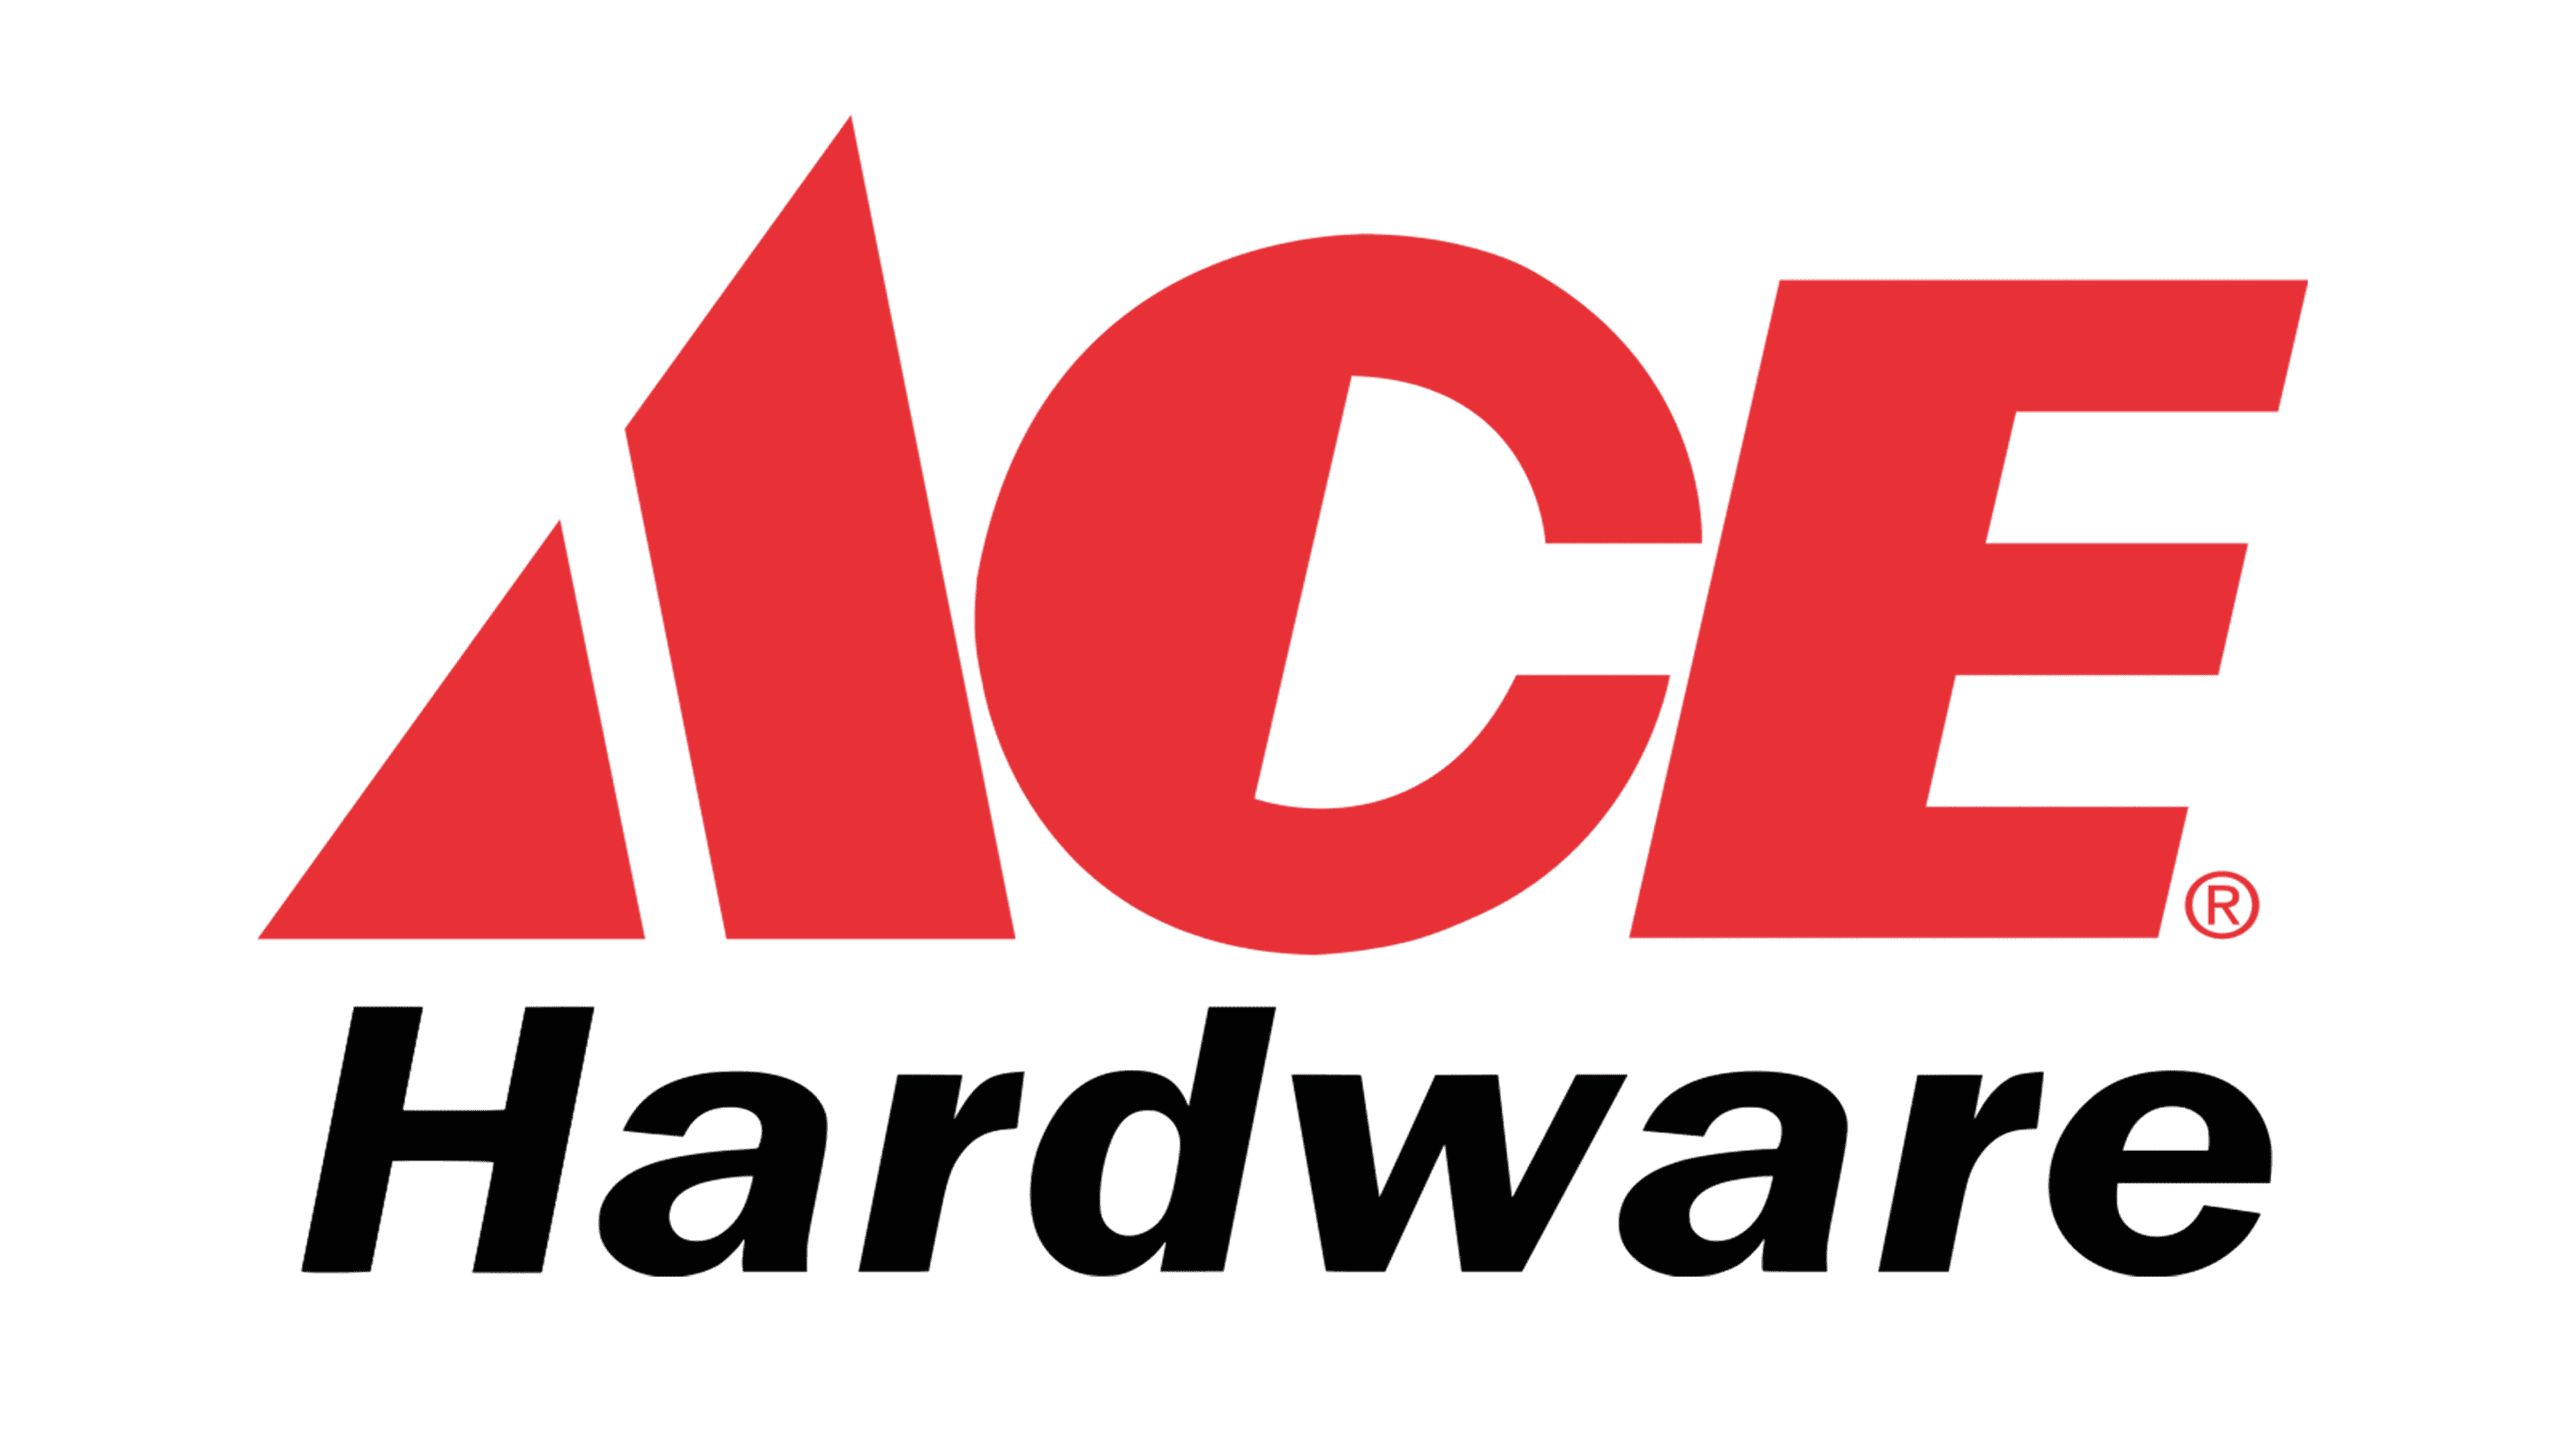 Ace Hardware Round Up Fundraiser Heritage Humane